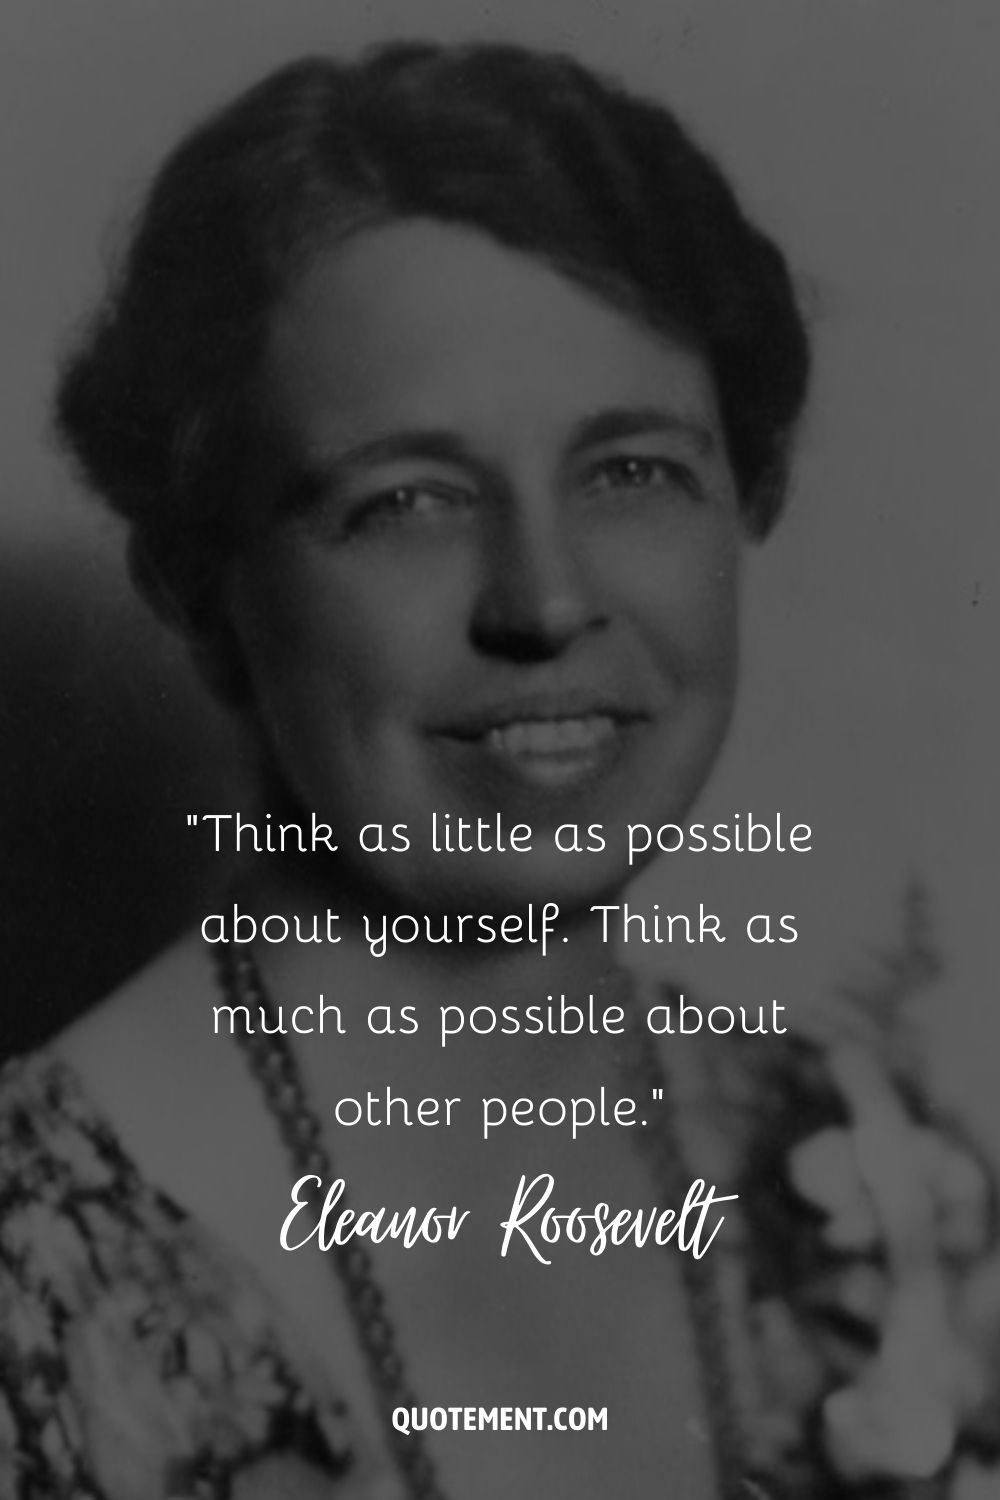 Imagen de una mujer valiente que representa una cita de Elanor Roosevelt.